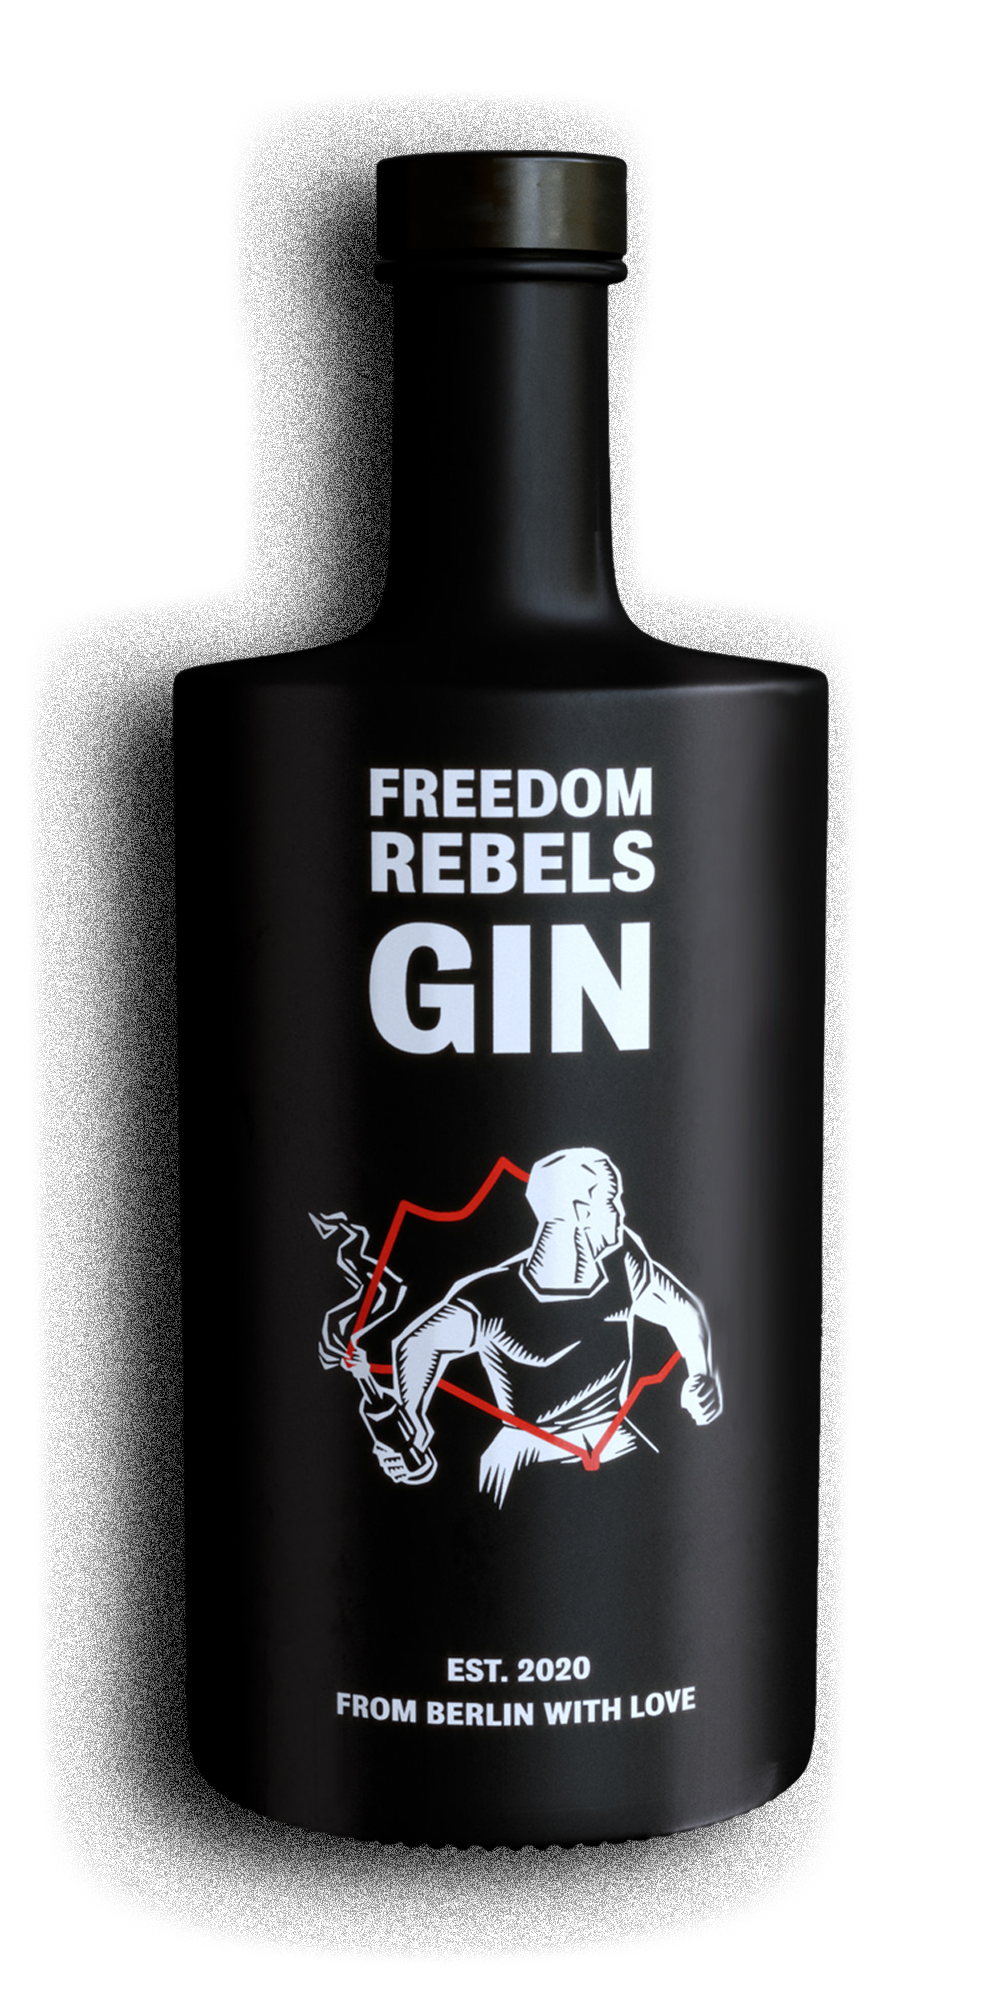 Foto da garrafa FREEDOM REBELS GIN (frente)